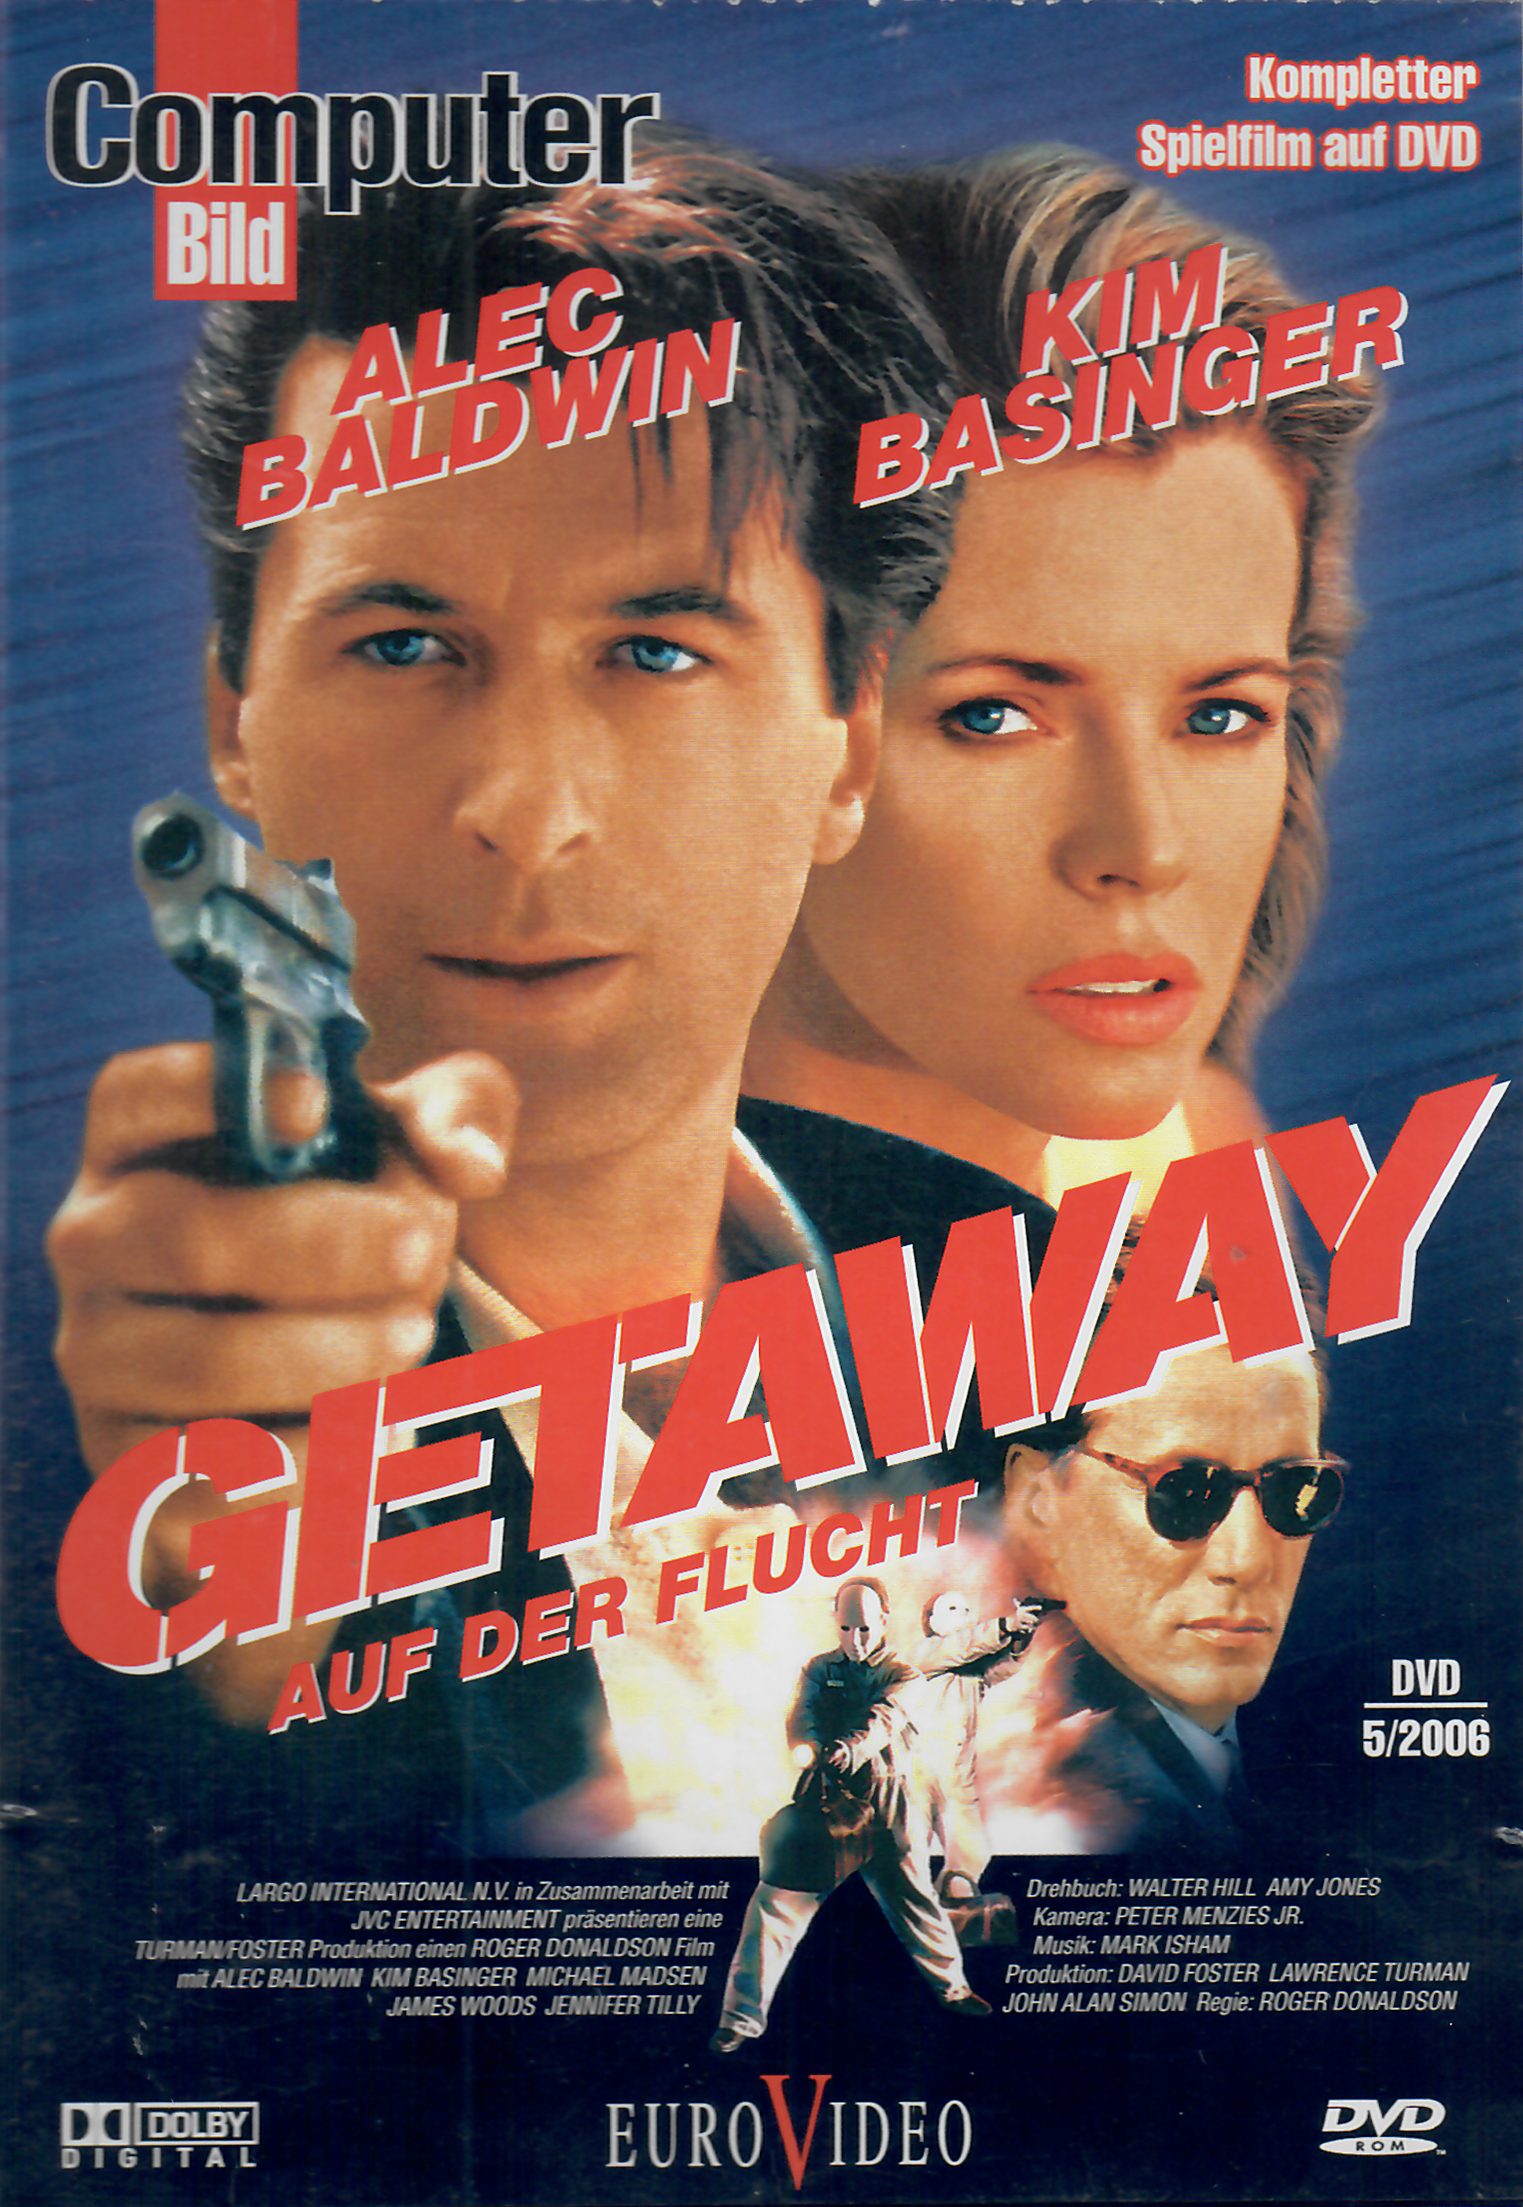 DVD Getaway - auf der Flucht (Computer Bild Fassung)